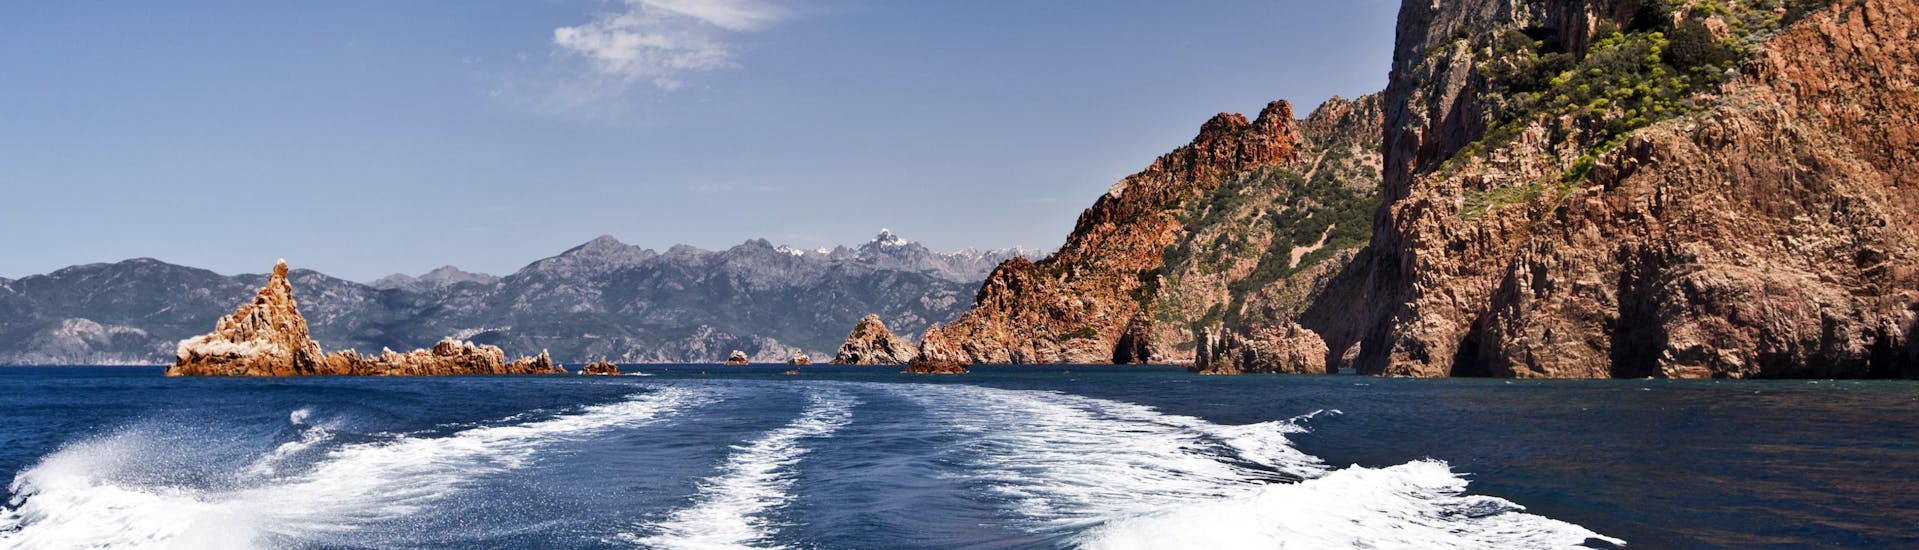 Blick vom Heck eines Bootes während einer Bootstour in den beeindruckenden Calanques de Piana an der Westküste Korsikas.